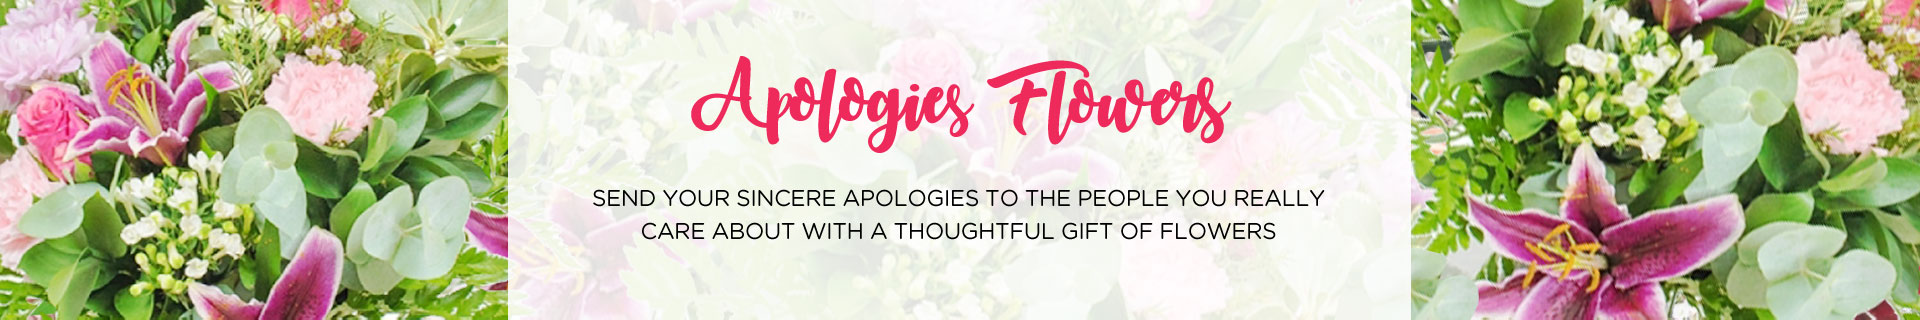 apologies-flowers.jpg